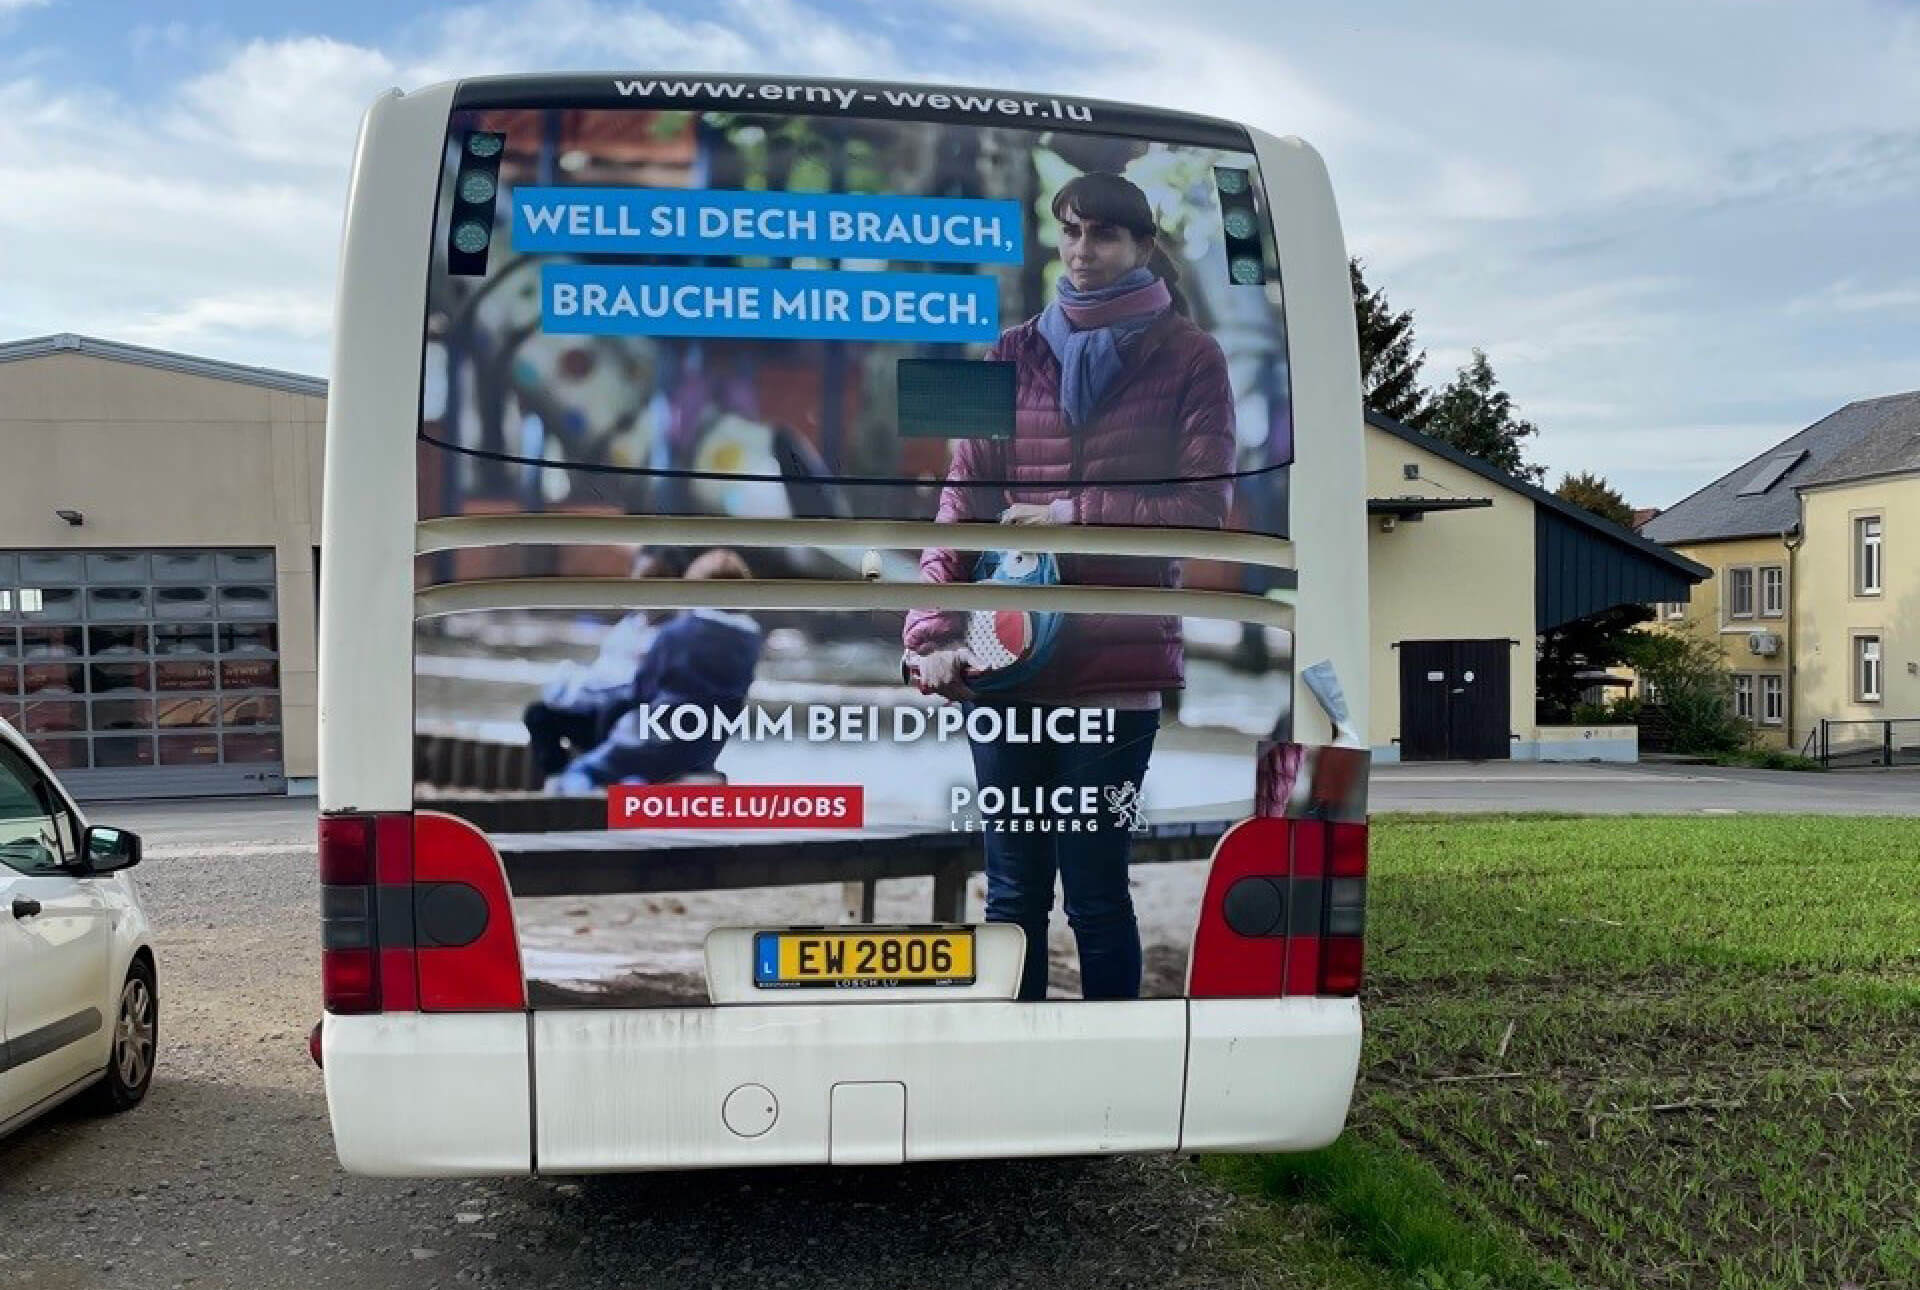 Habillage "Cul de bus" pour la campagne de recrutement de Police Luxembourg. Visuel montrant une femme ayant perdu son enfant.